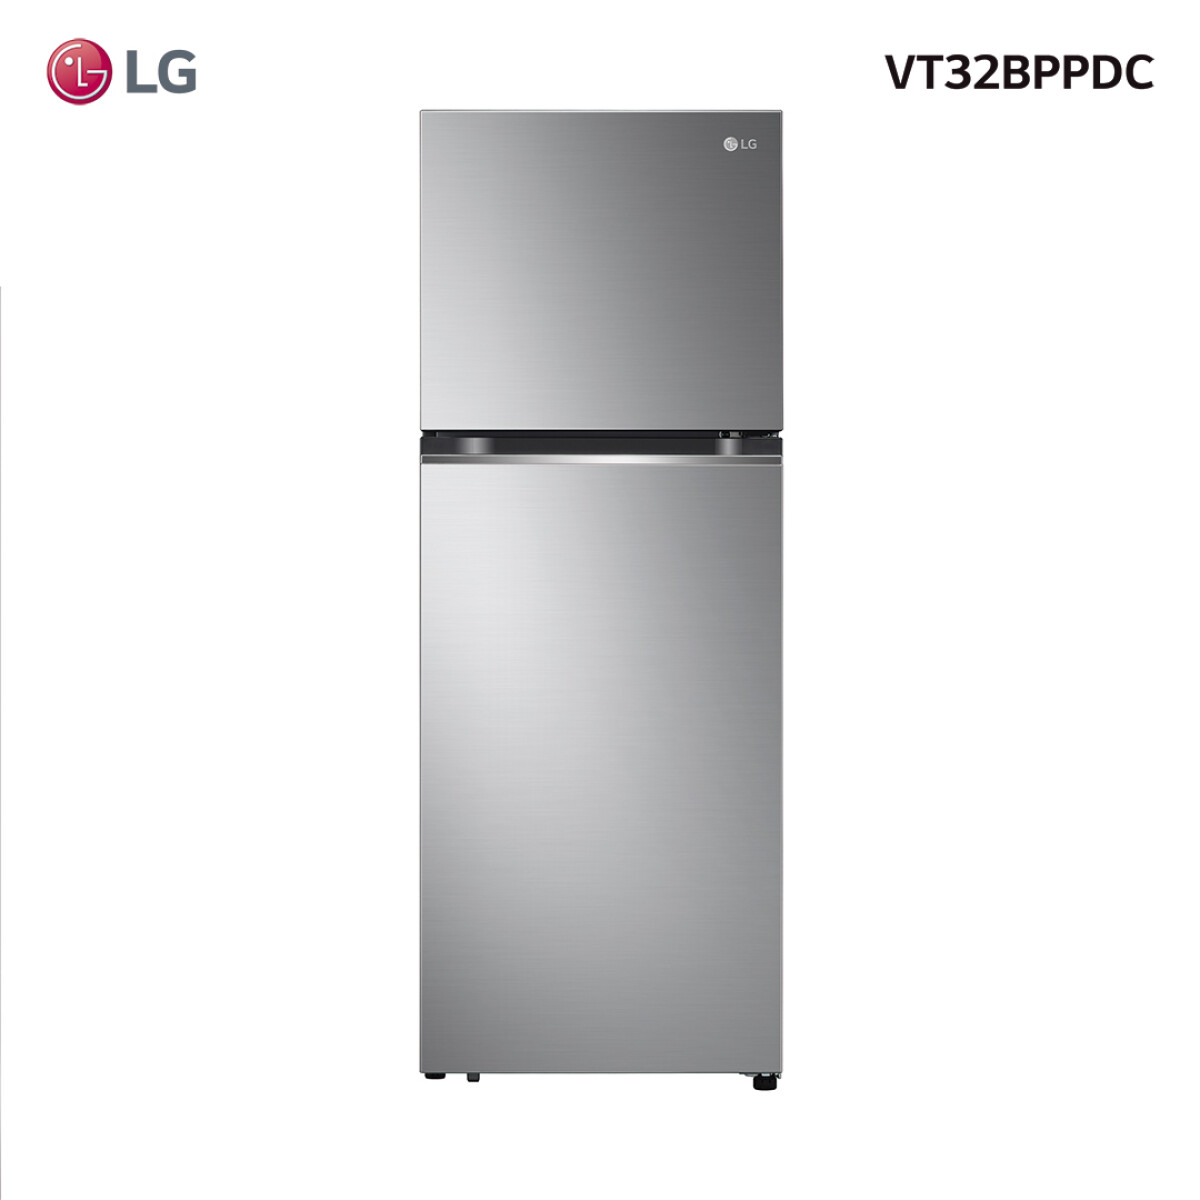 Refrigerador LG inverter 340L VT32BPPDC - 001 